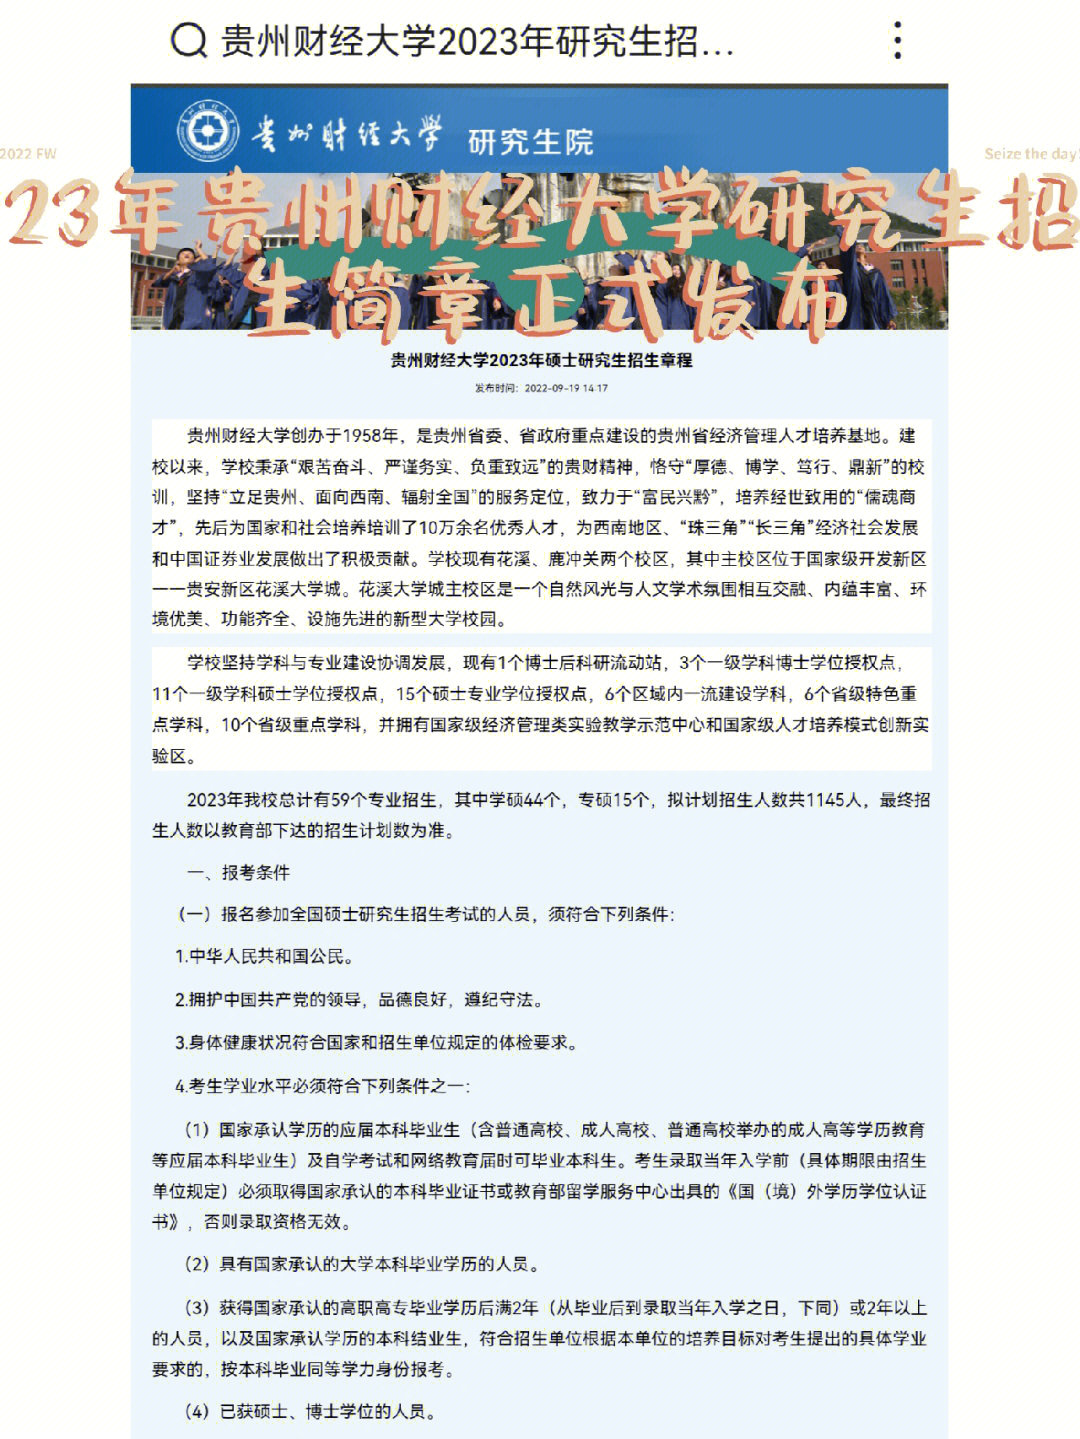 23年贵州财经大学研究生招生简章正式发布